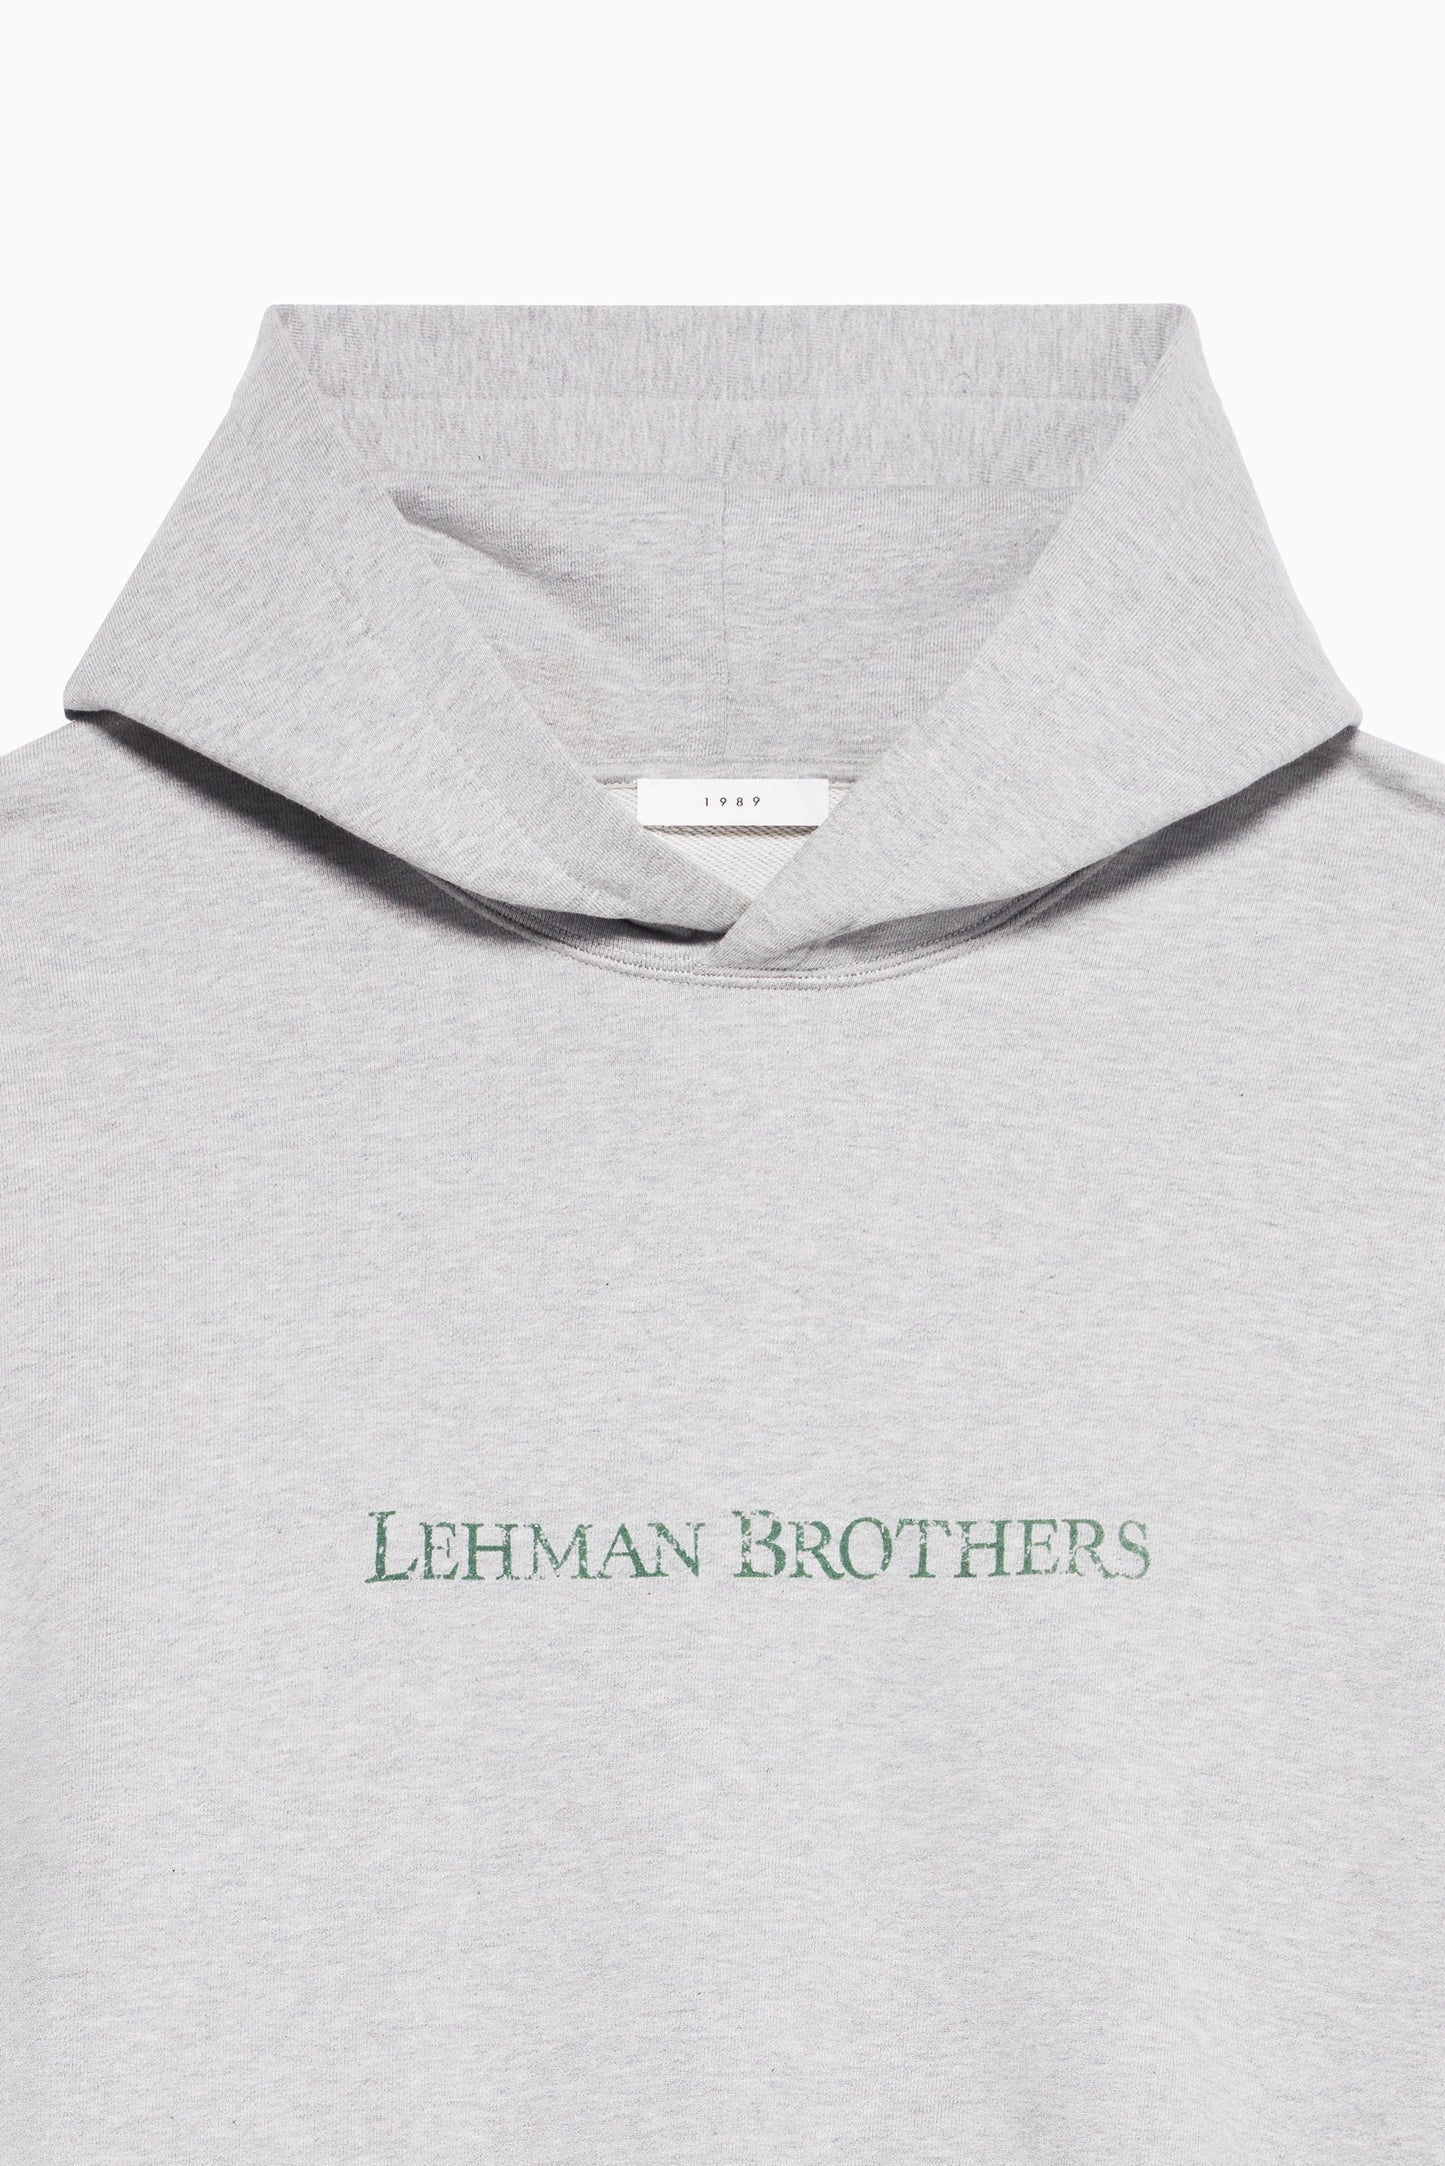 Woman's Lehman Brothers Hoodie